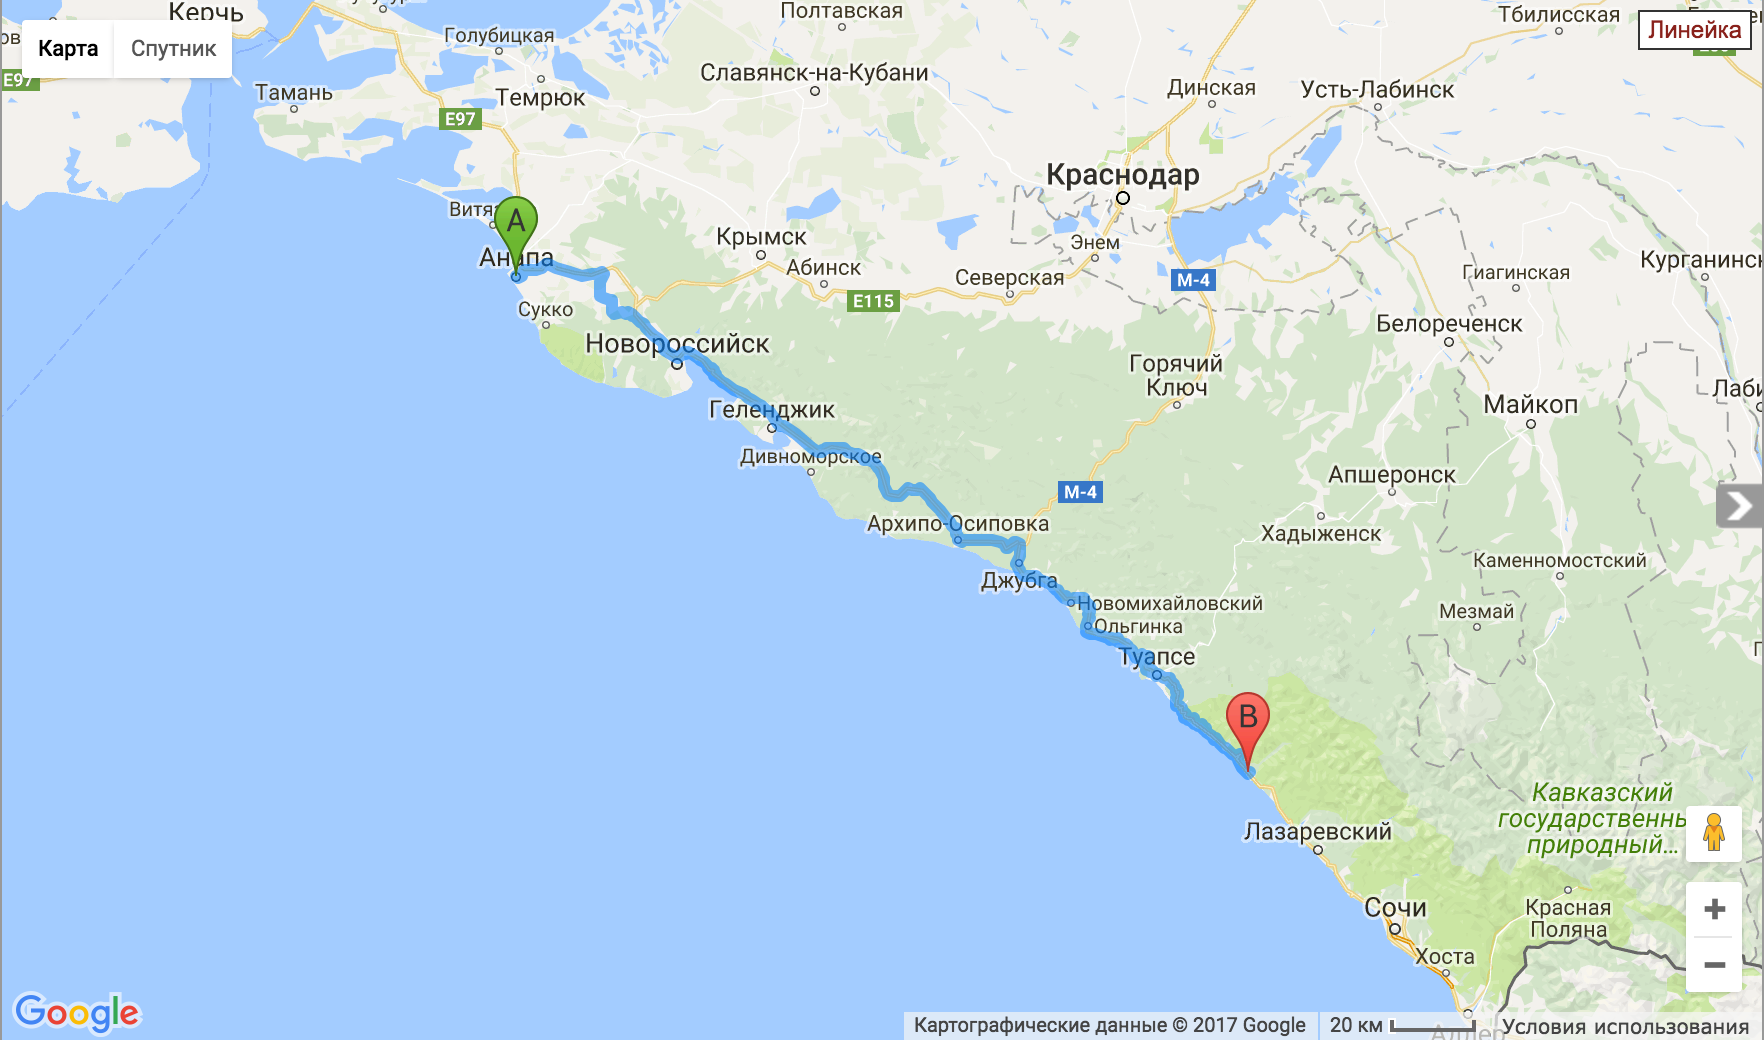 Черноморское побережье краснодарского края все включено. Расположение Геленджика на карте Черноморского побережья. Карта Черноморского побережья Краснодарского края от Анапы до Сочи.